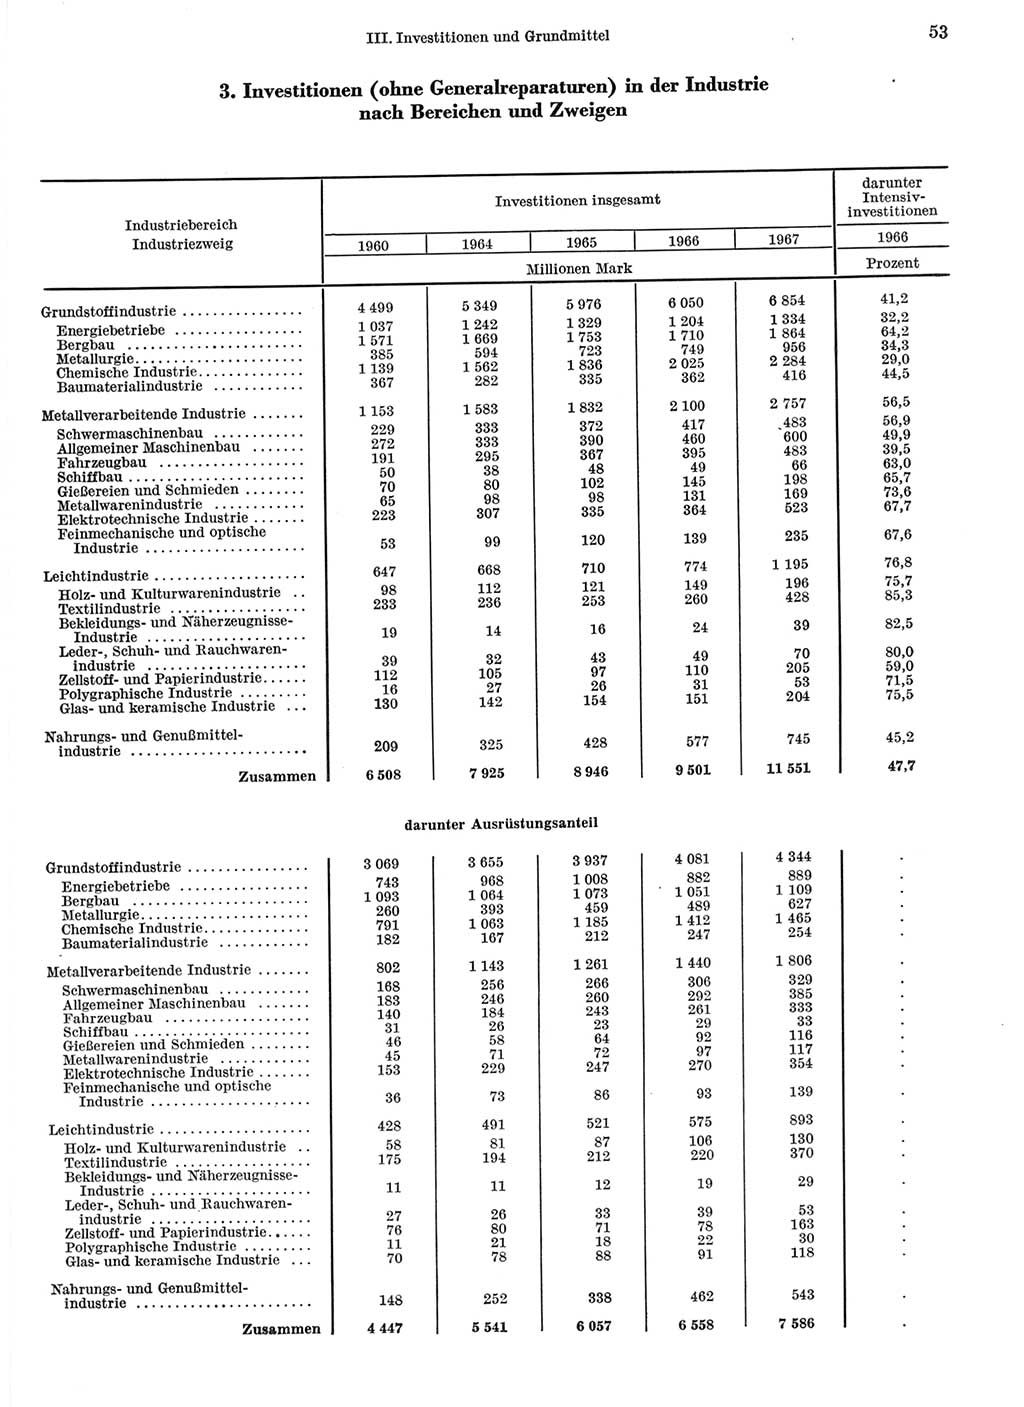 Statistisches Jahrbuch der Deutschen Demokratischen Republik (DDR) 1968, Seite 53 (Stat. Jb. DDR 1968, S. 53)